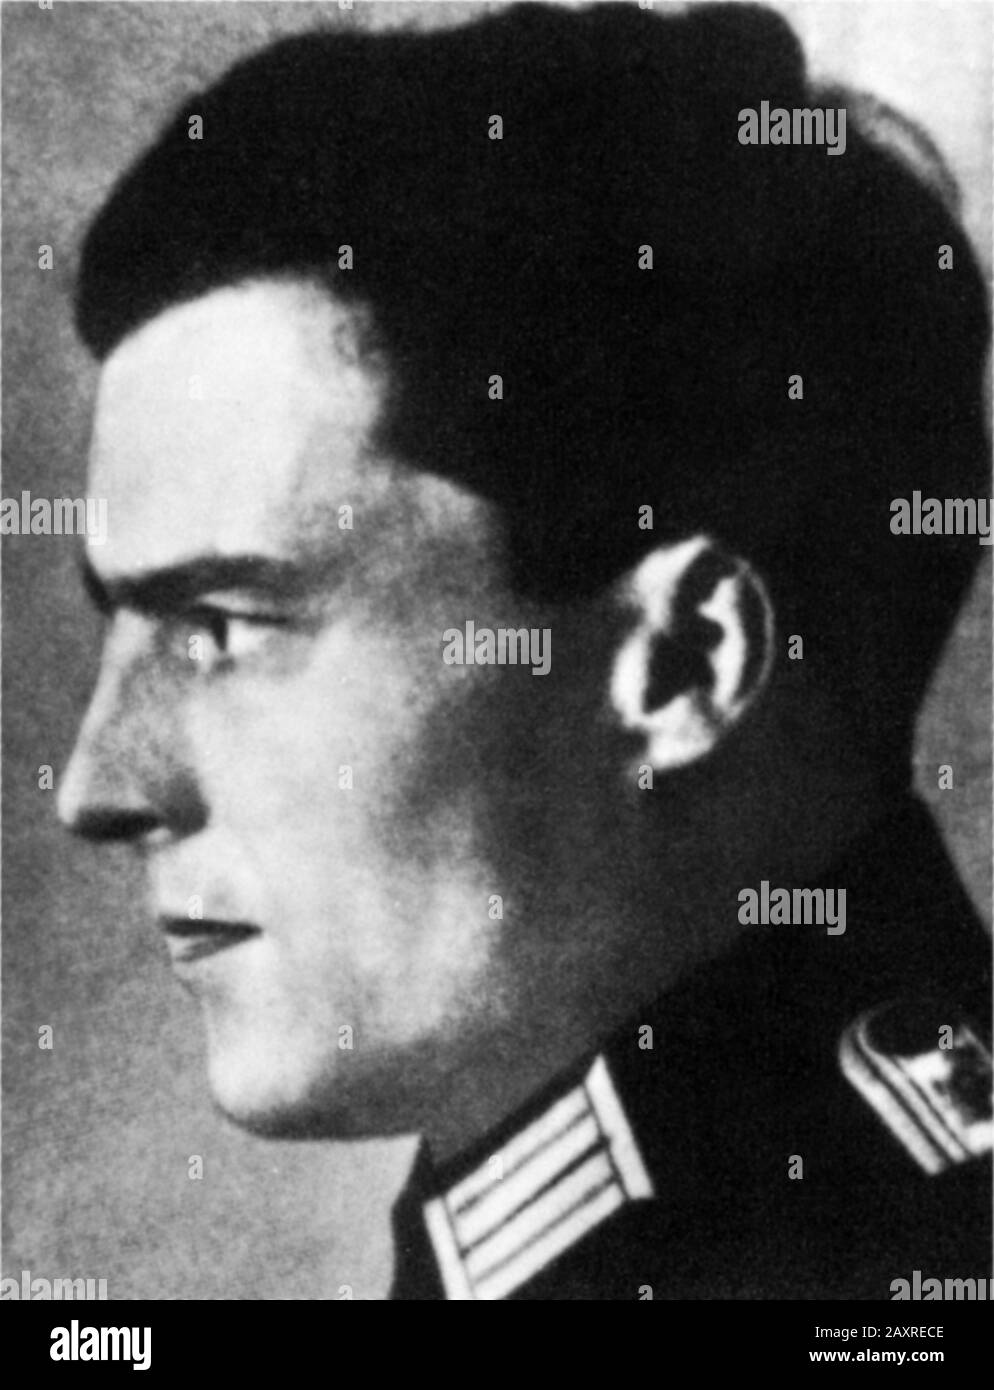 1930 CA , ALEMANIA : El Coronel Nazi alemán Graf Klaus SCHENK Von STAUFFENBERG ( 1907 - 1944 ). Como oficial del ejército alemán y aristócrata que fue uno de los principales miembros del fallido 20 de julio de 1944 para asesinar a Adolf Hitler y sacar al Partido Nazi del poder. Junto con Henning von Tresckow y Hans Oster, fue una de las figuras centrales del movimiento De Resistencia alemán dentro de la Wehrmacht . Por su participación en el movimiento fue baleado poco después del fallido intento conocido como operación Valkyrie - OPERAZIONE VALKIRIA - Valchiria - CLAUS - Conte - Segunda Guerra Mundial - NAZI - NAZIST - SEC Foto de stock